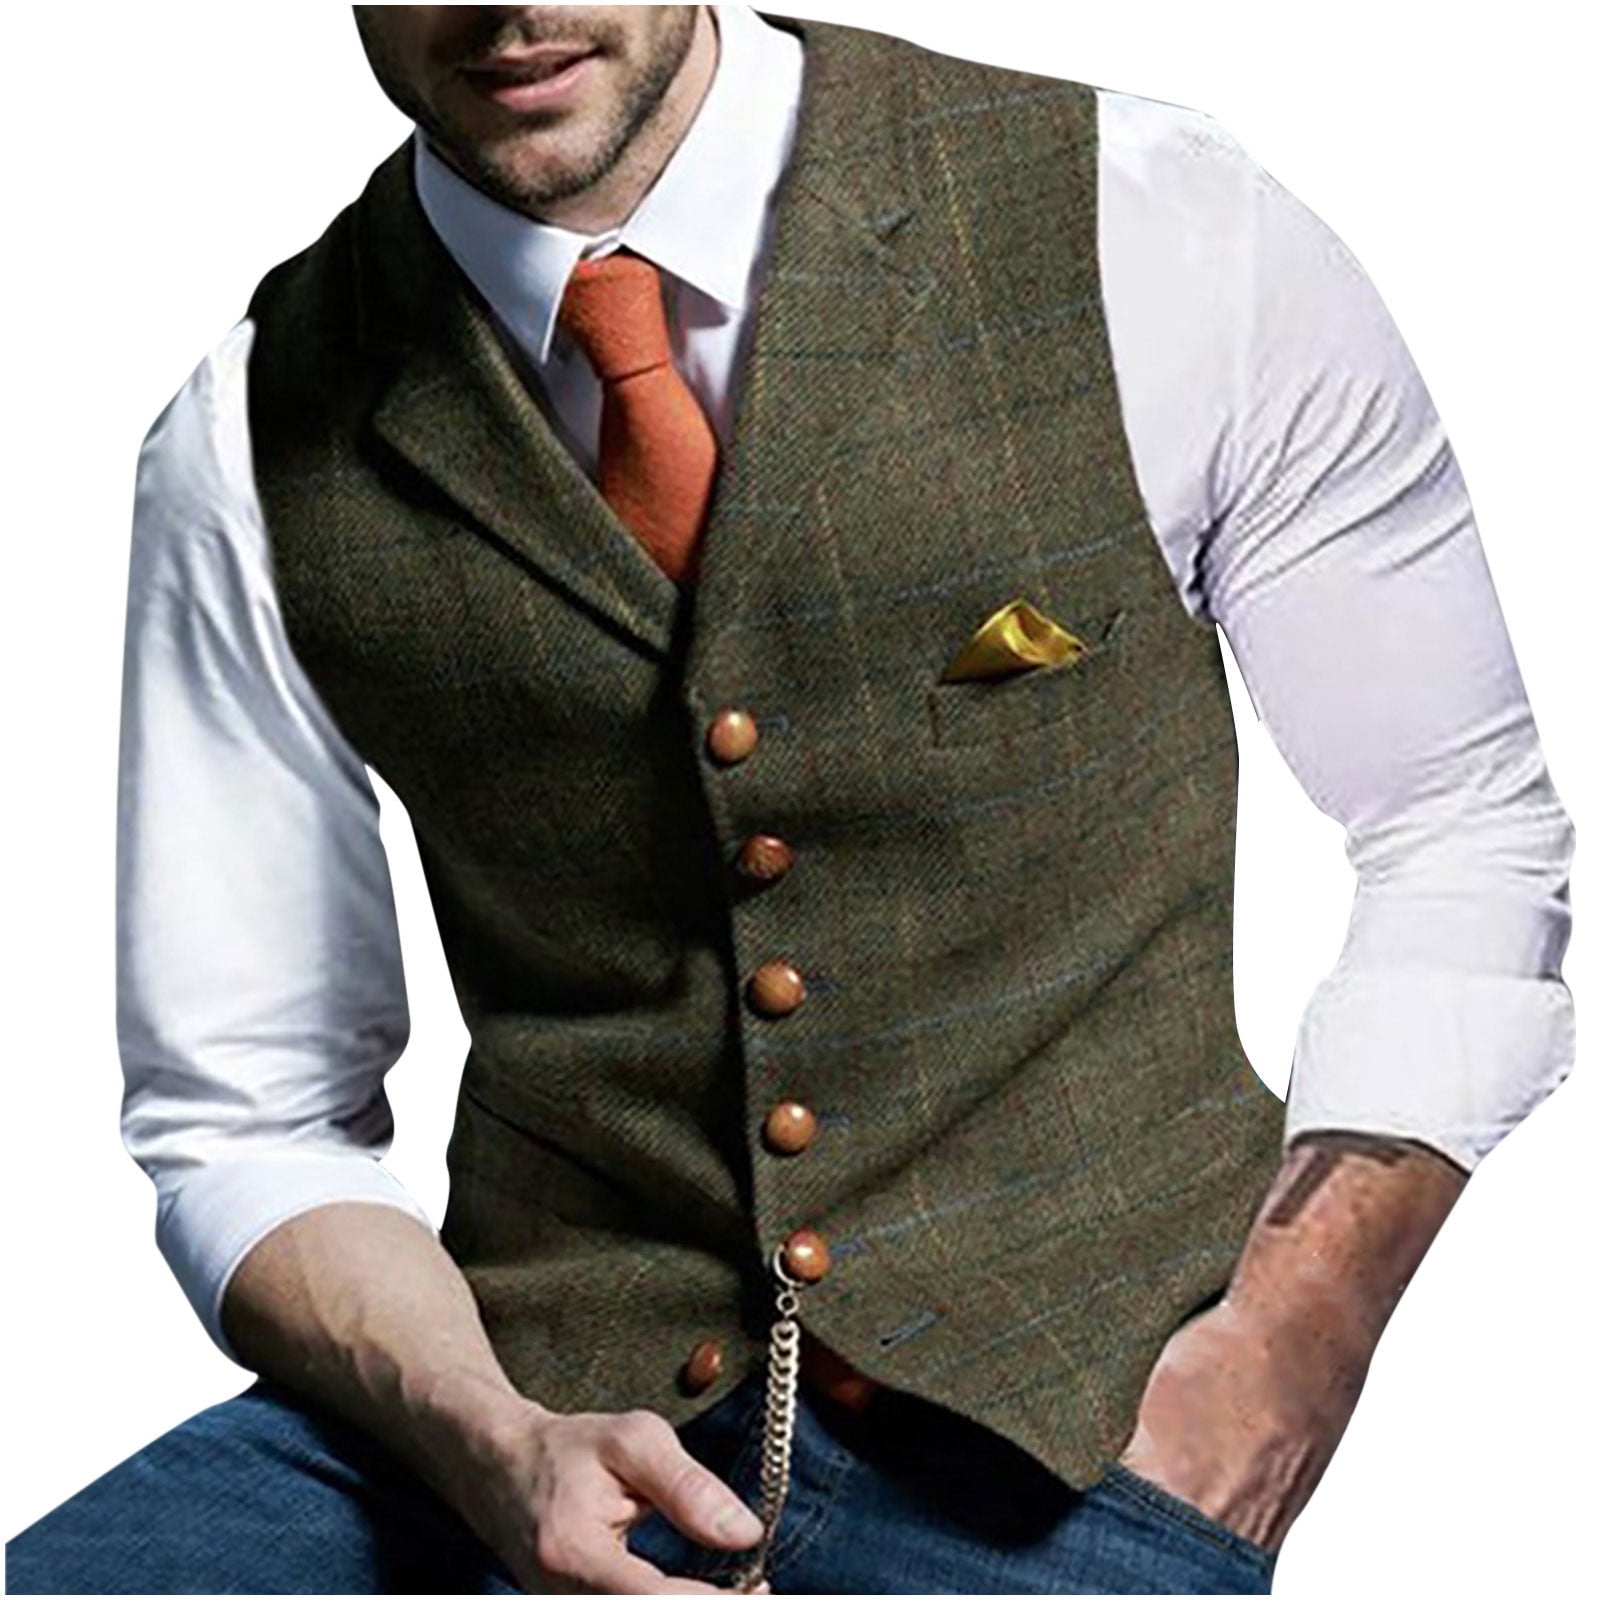 Vest for Men Formal Sleeveless Slim Fit Jacket Casual Suit Vests